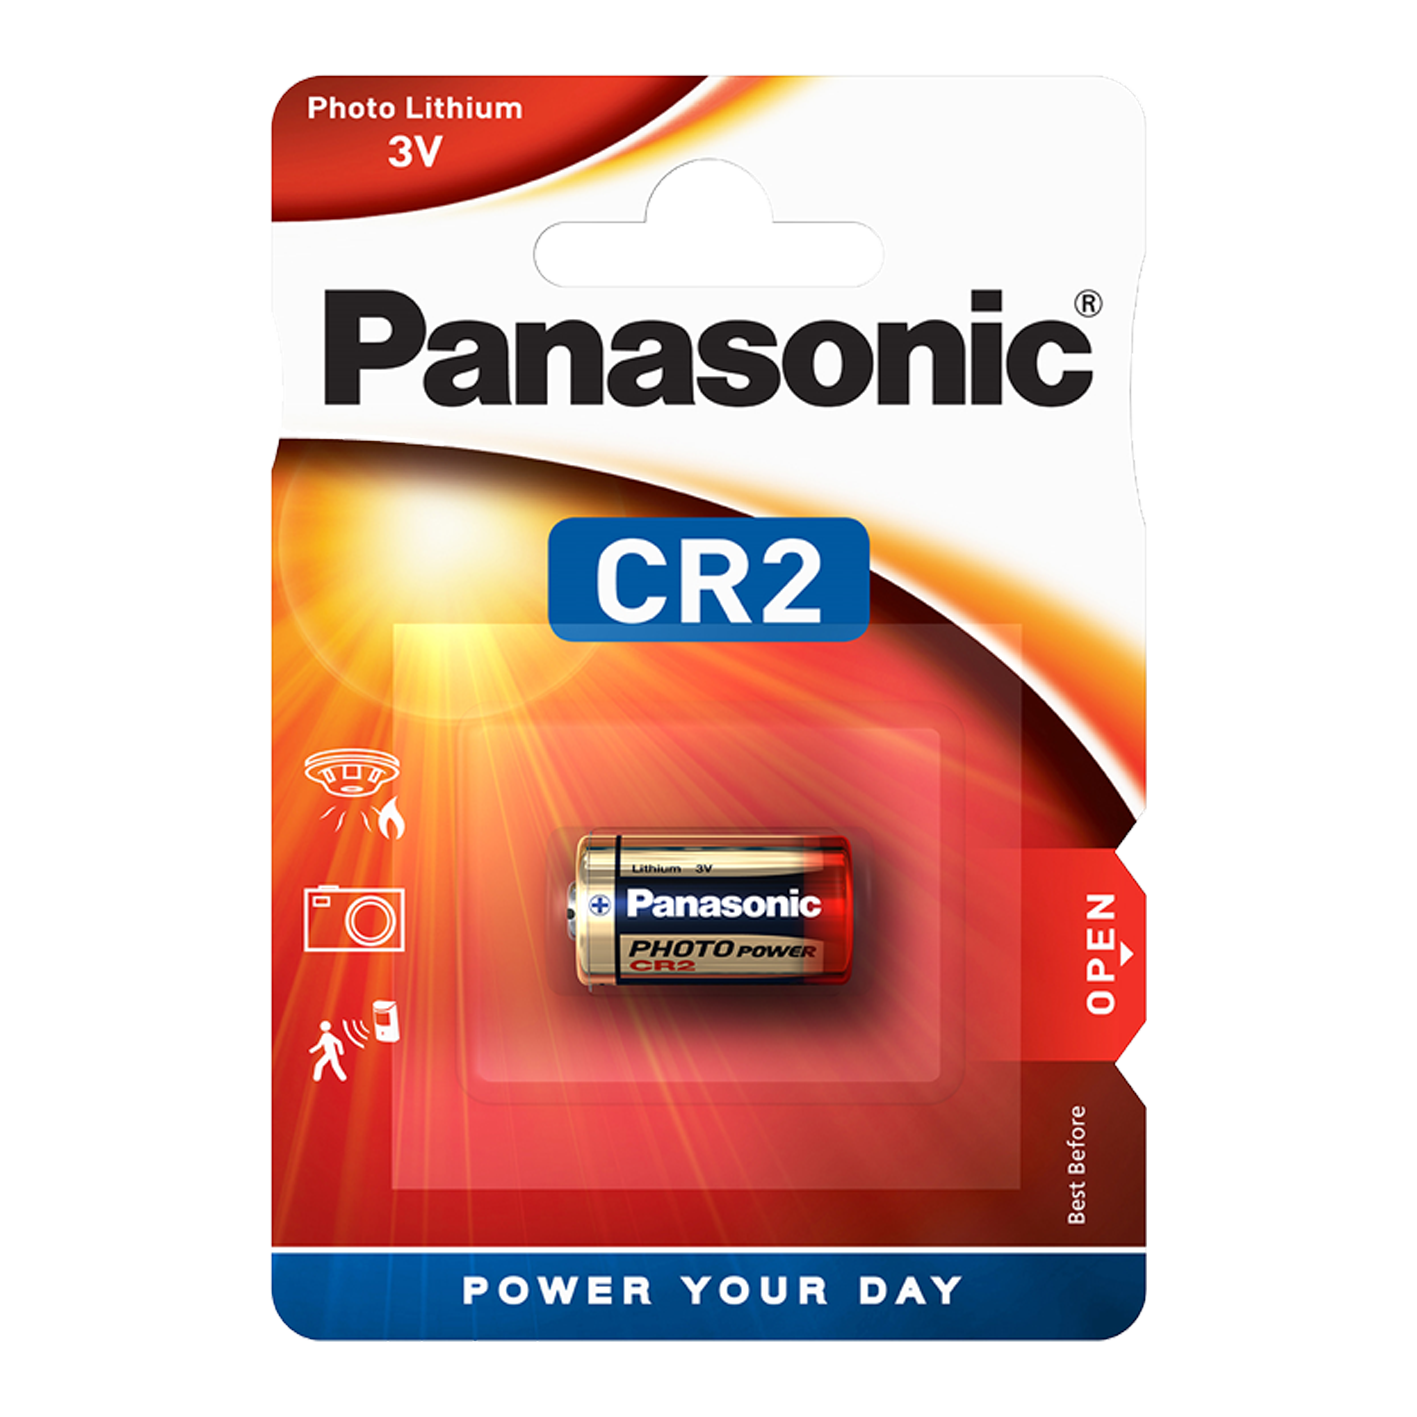 Panasonic CR2 Lithium, Pack of 1